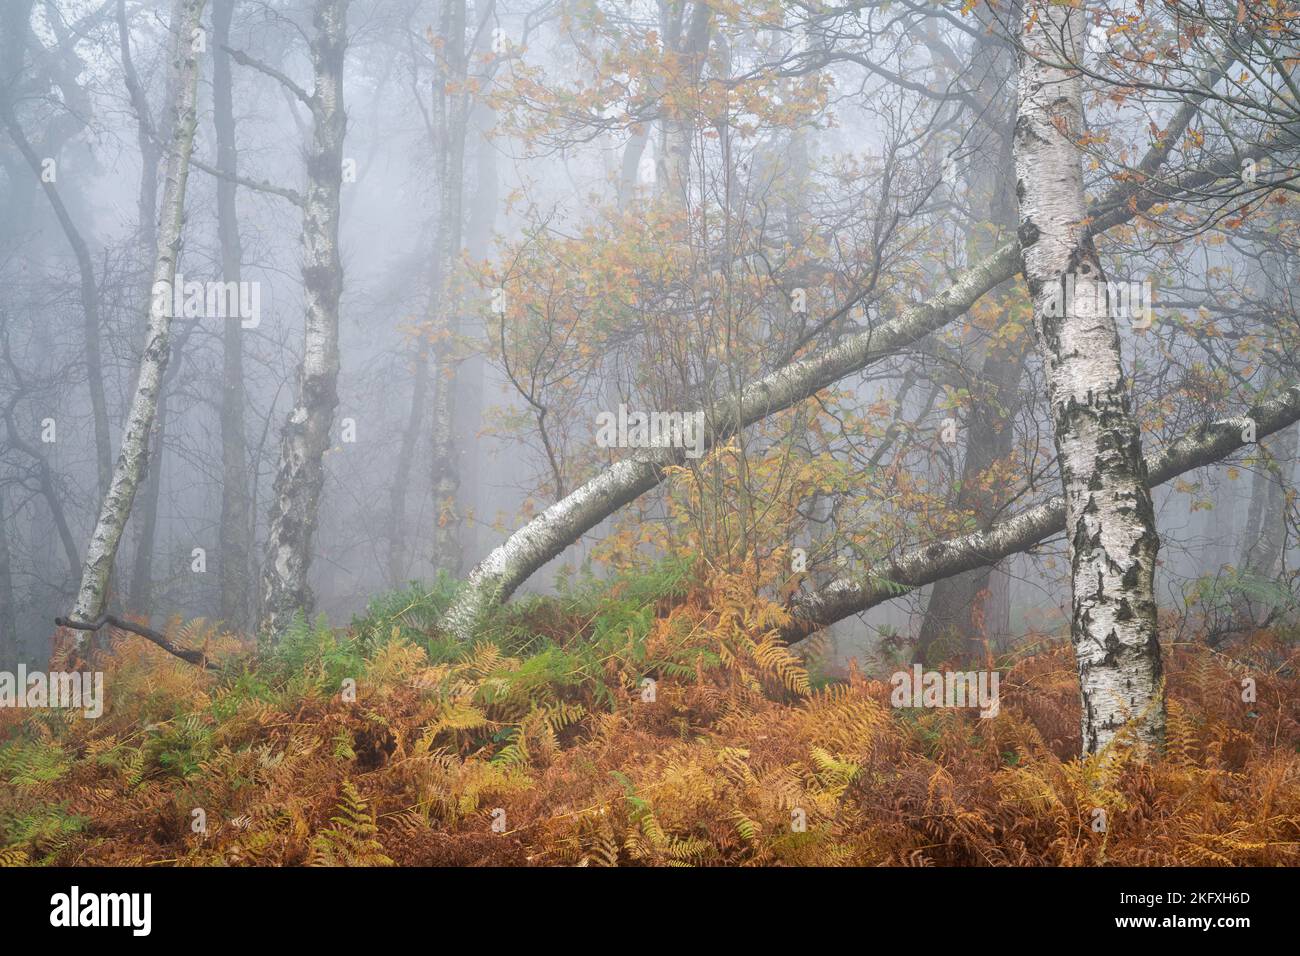 Il sottobosco rapidamente rivendica la betulla d'argento caduta in una caotica scena boschiva su Otley Chevin, con il paesaggio avvolto in fitta nebbia. Foto Stock